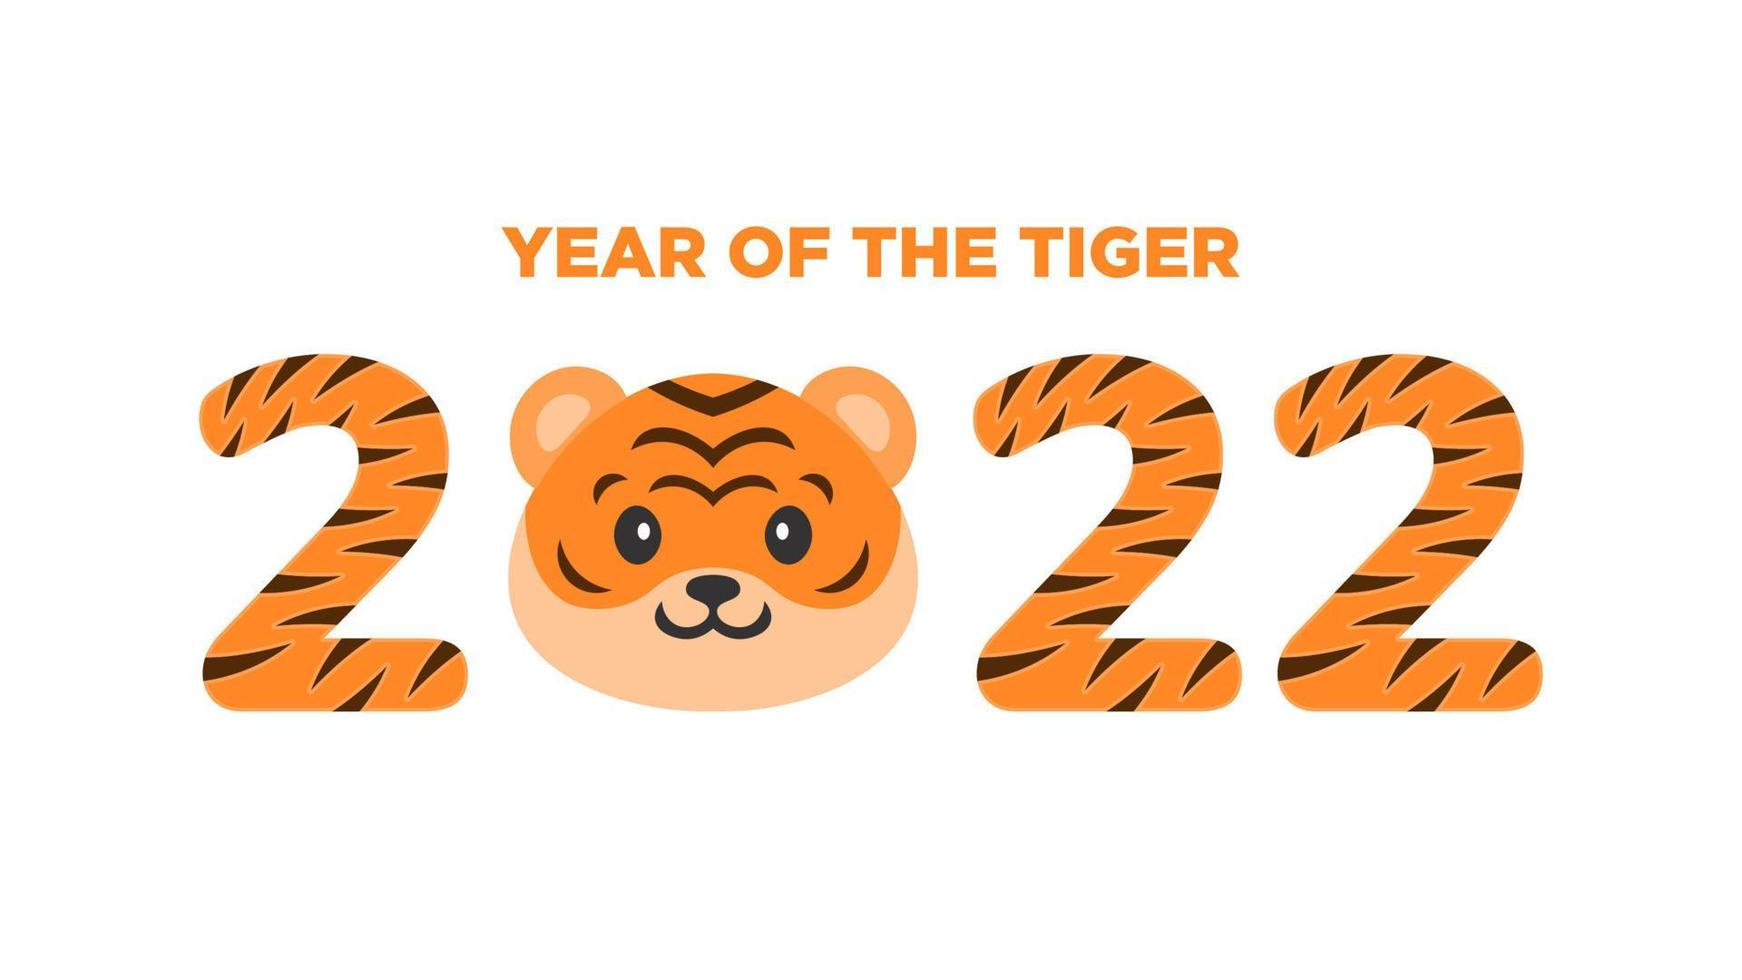 ano de tigre 2022 tipografia de ano novo chinês, mascote de tigre fofo, modelo adequado para calendário, cartão de cumprimentos, panfleto, ilustração vetorial. vetor